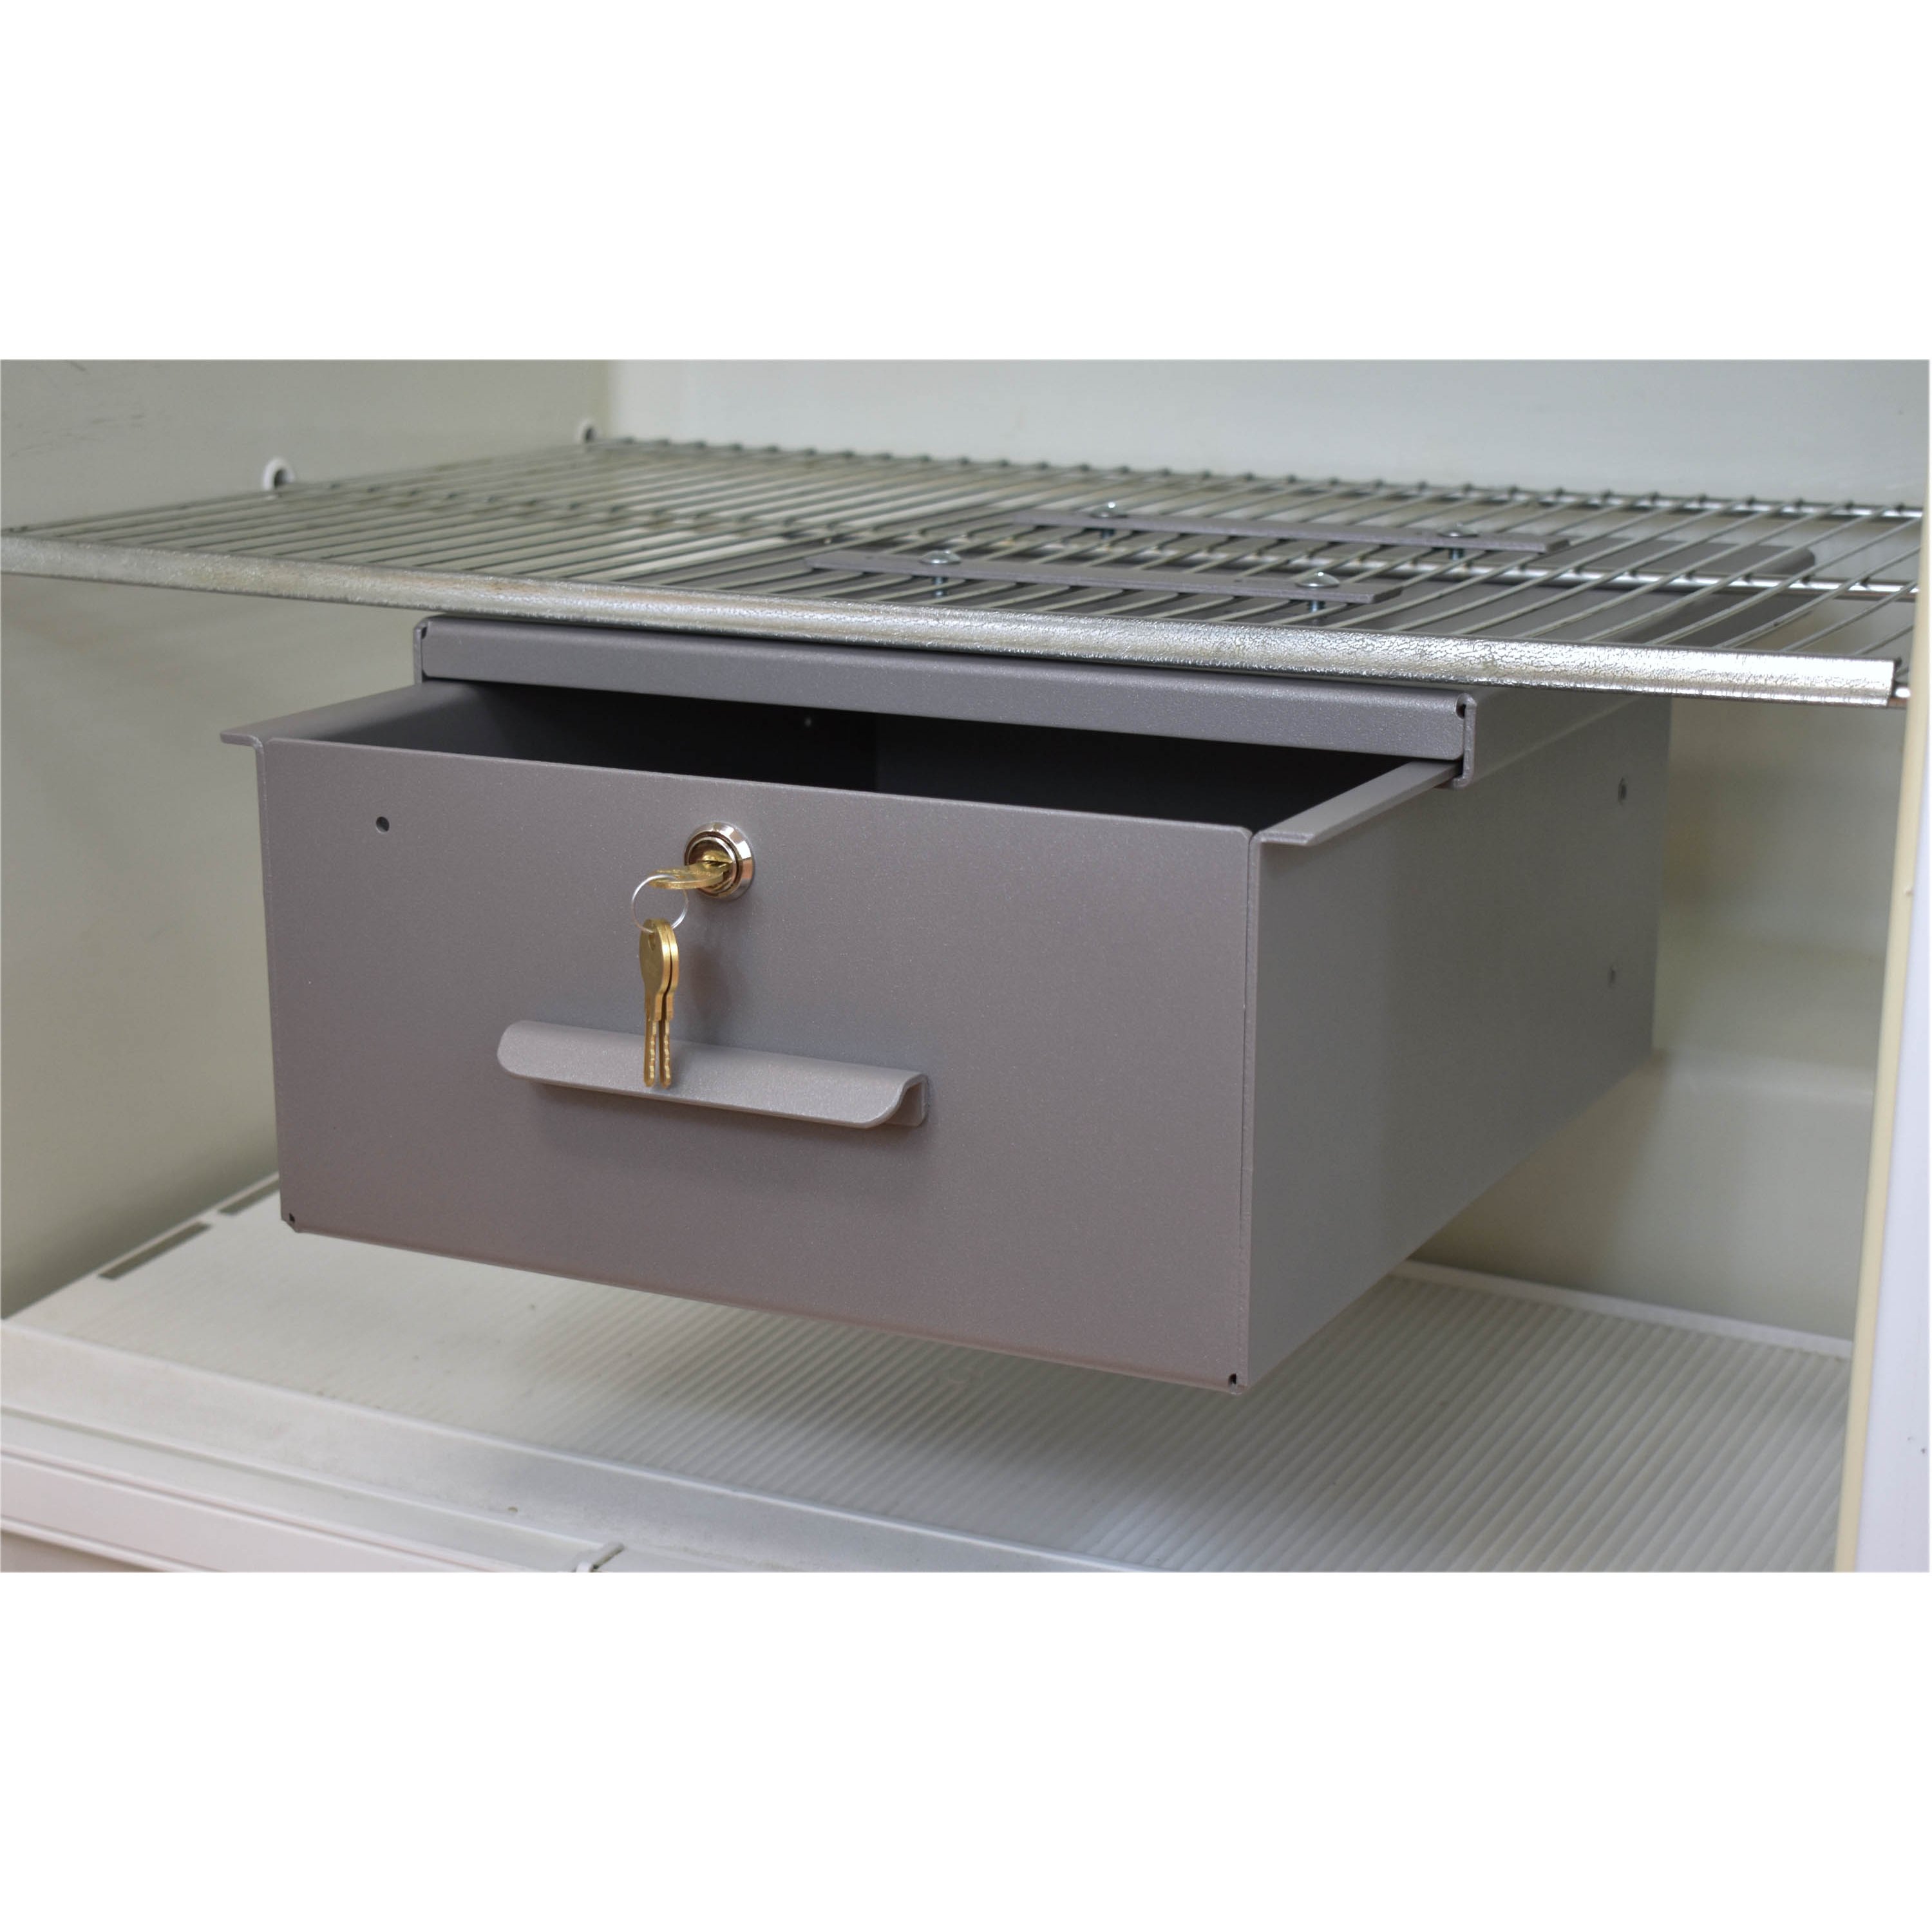 OmniMed 183001 Small Clear Acrylic Refrigerator Lock Box with Key Lock